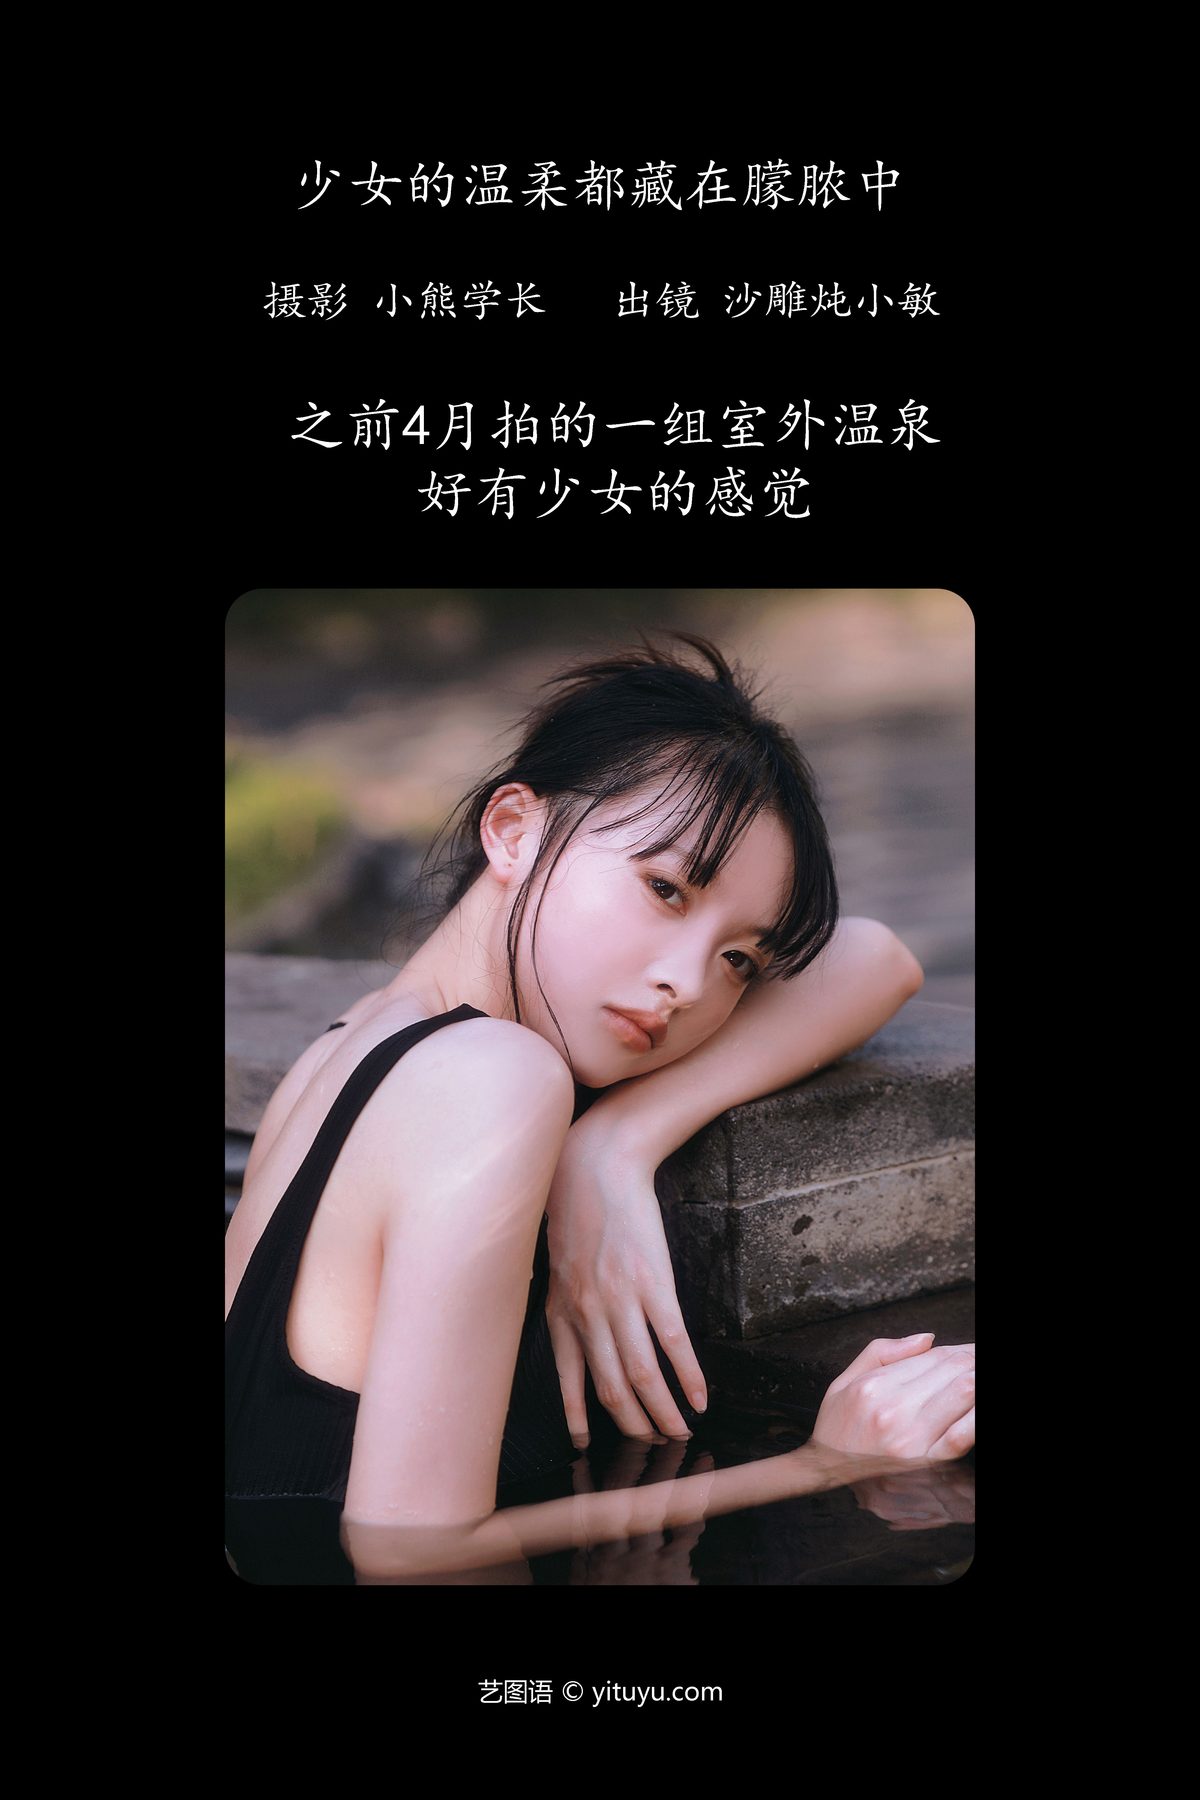 YiTuYu艺图语 Vol 5010 Sha Diao Dun Xiao Min 0001 4664685751.jpg